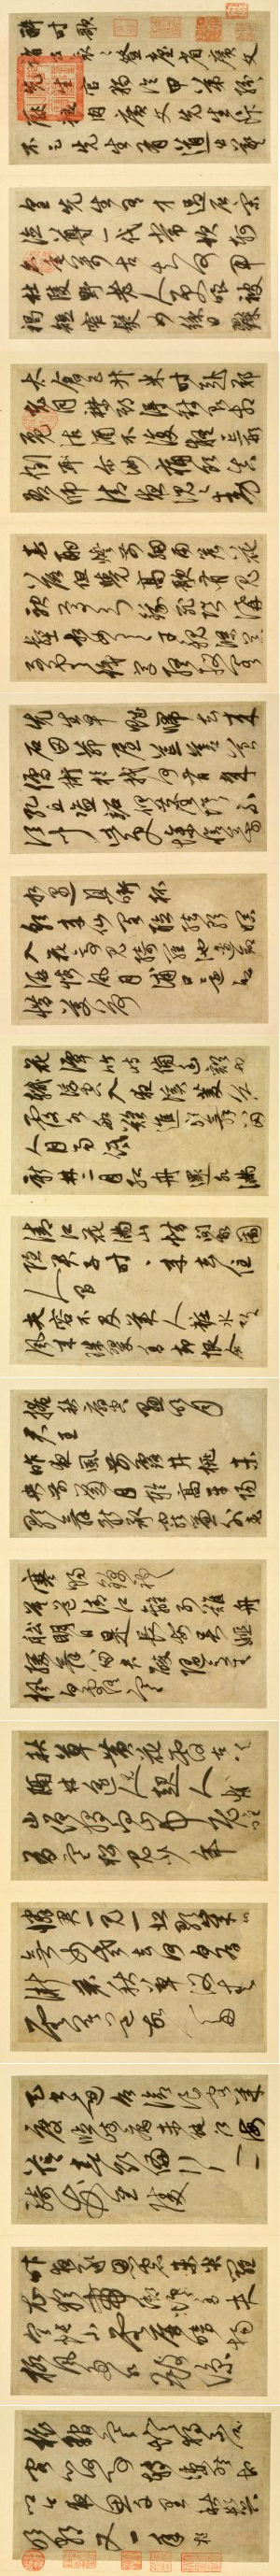 鲜于枢行书《醉时歌等唐人诗十二首》-台北故宫博物院藏(图16)